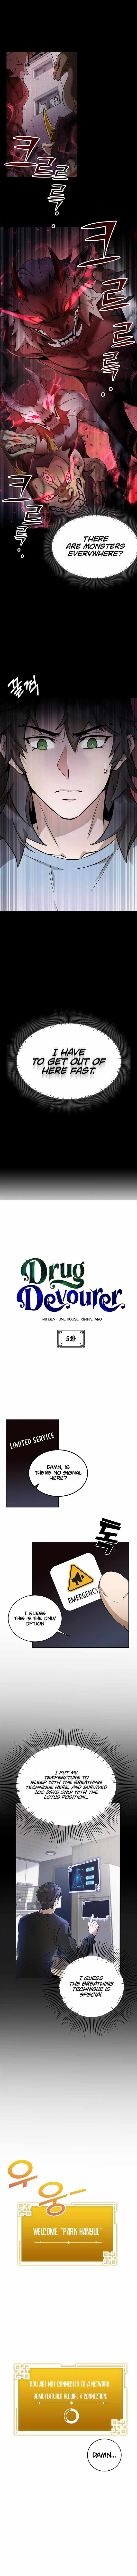 Drug Devourer chapter 5